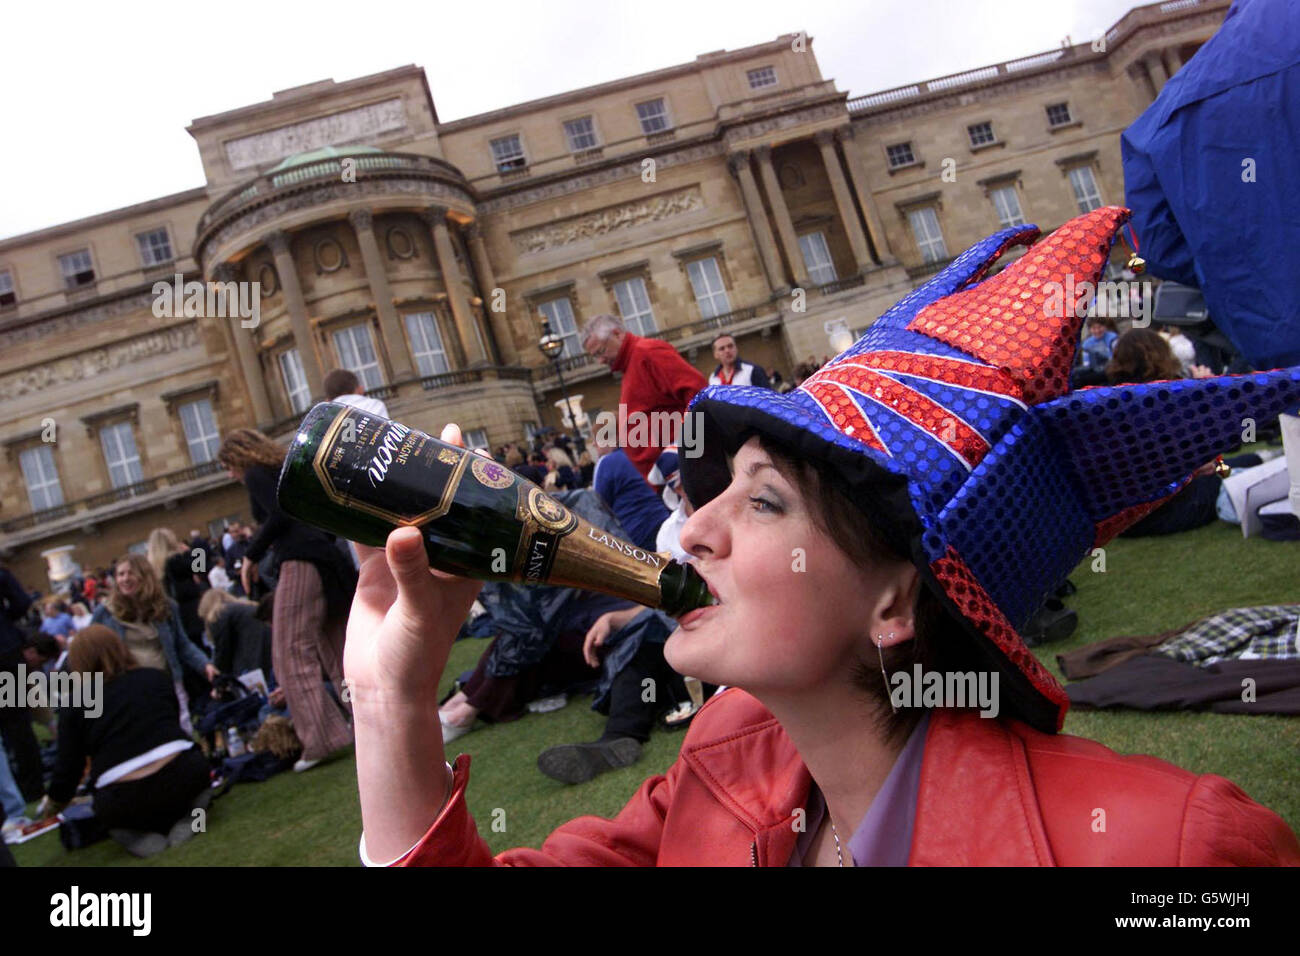 Ein Mitglied der Öffentlichkeit genießt kostenlosen Champagner, während es auf das Golden Jubilee-Rockkonzert in den Gärten des Buckingham Palace wartet. * die Jubilee Spectacular wird mit Queen-Gitarrist Brian May gestartet, der die Nationalhymne vom Dach des Palastes aus aufführt. Stockfoto